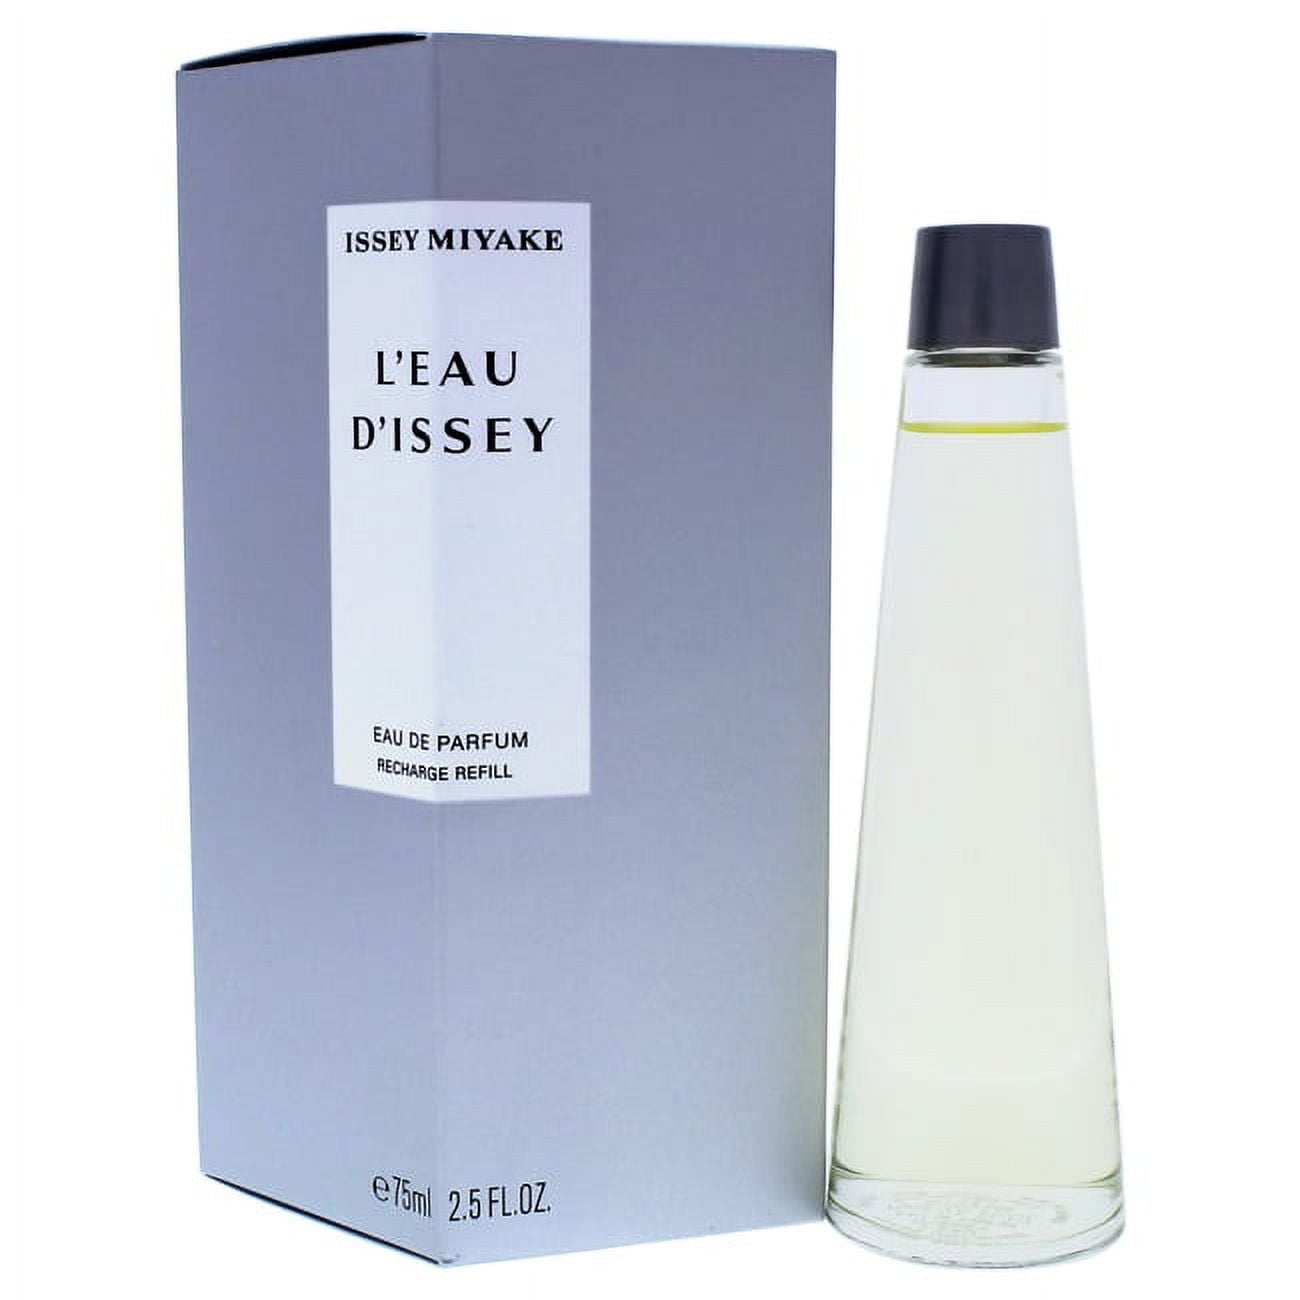 Issey Miyake L'eau D'issey Eau de Parfum, Perfume for Women, 2.5 Oz ...